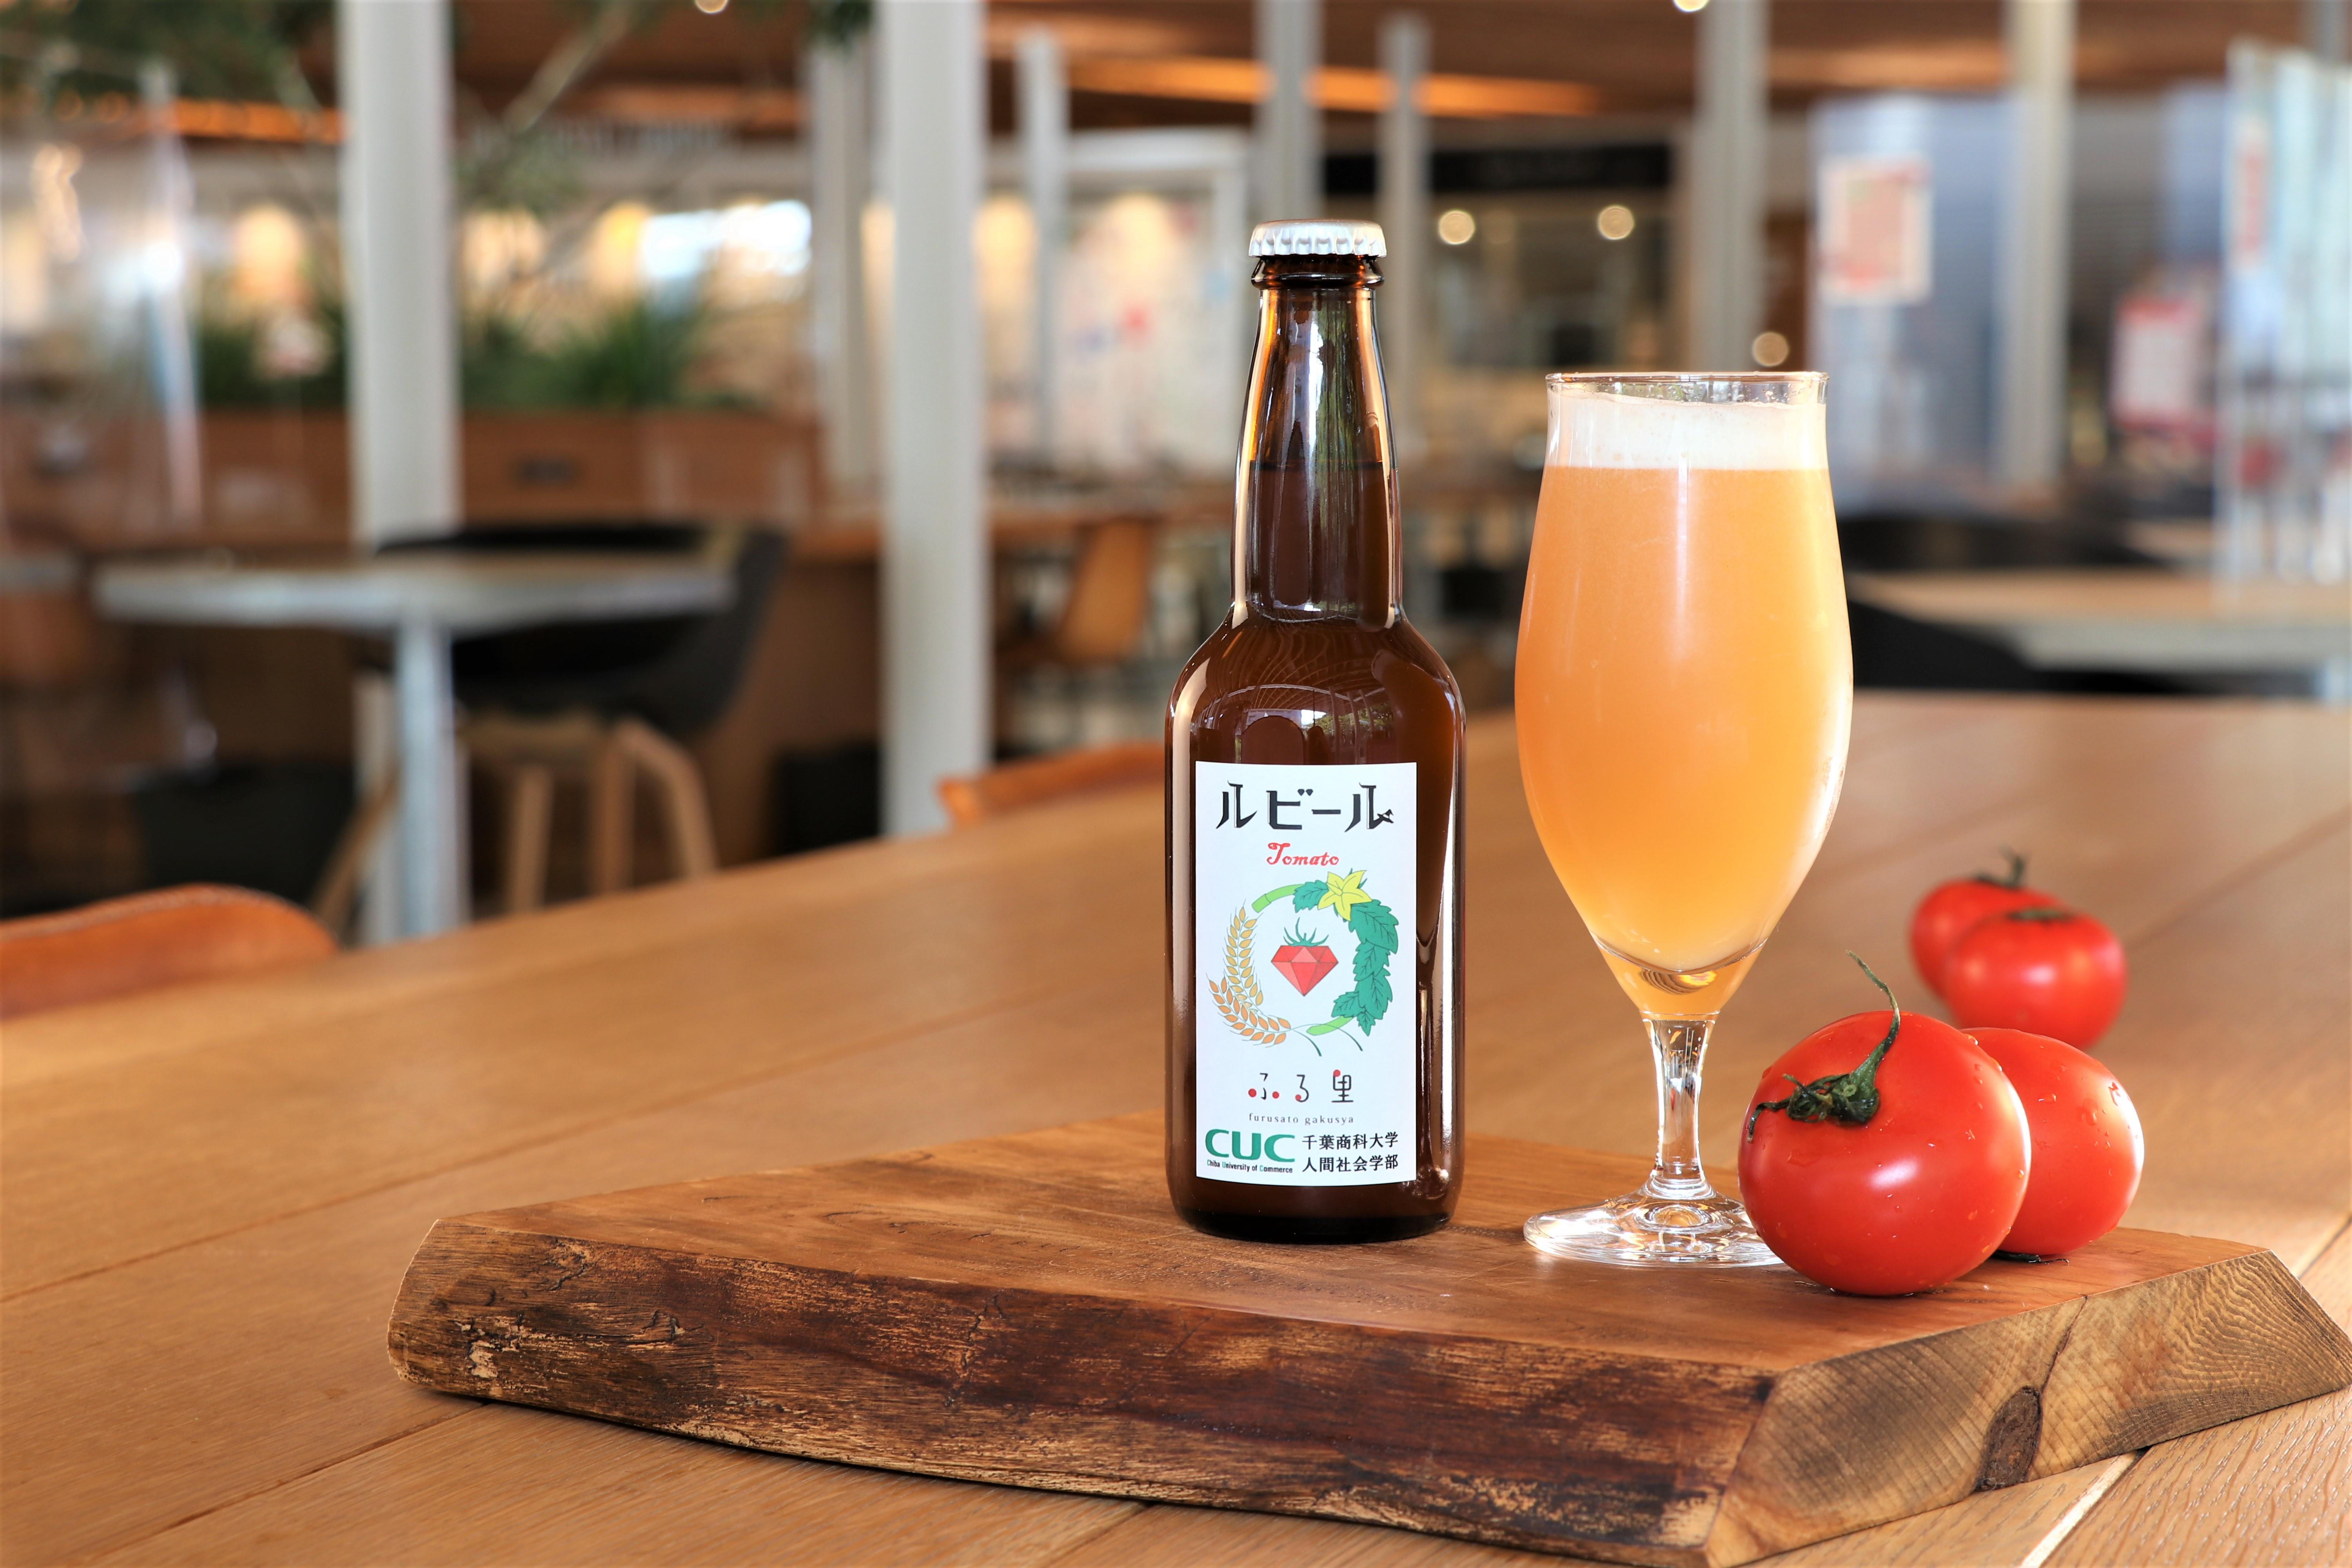 千葉商科大学の学生たちが福祉施設で栽培のトマトを使用したオリジナルビールを開発！ -- 地域・福祉・農業・酒類業界を元気に